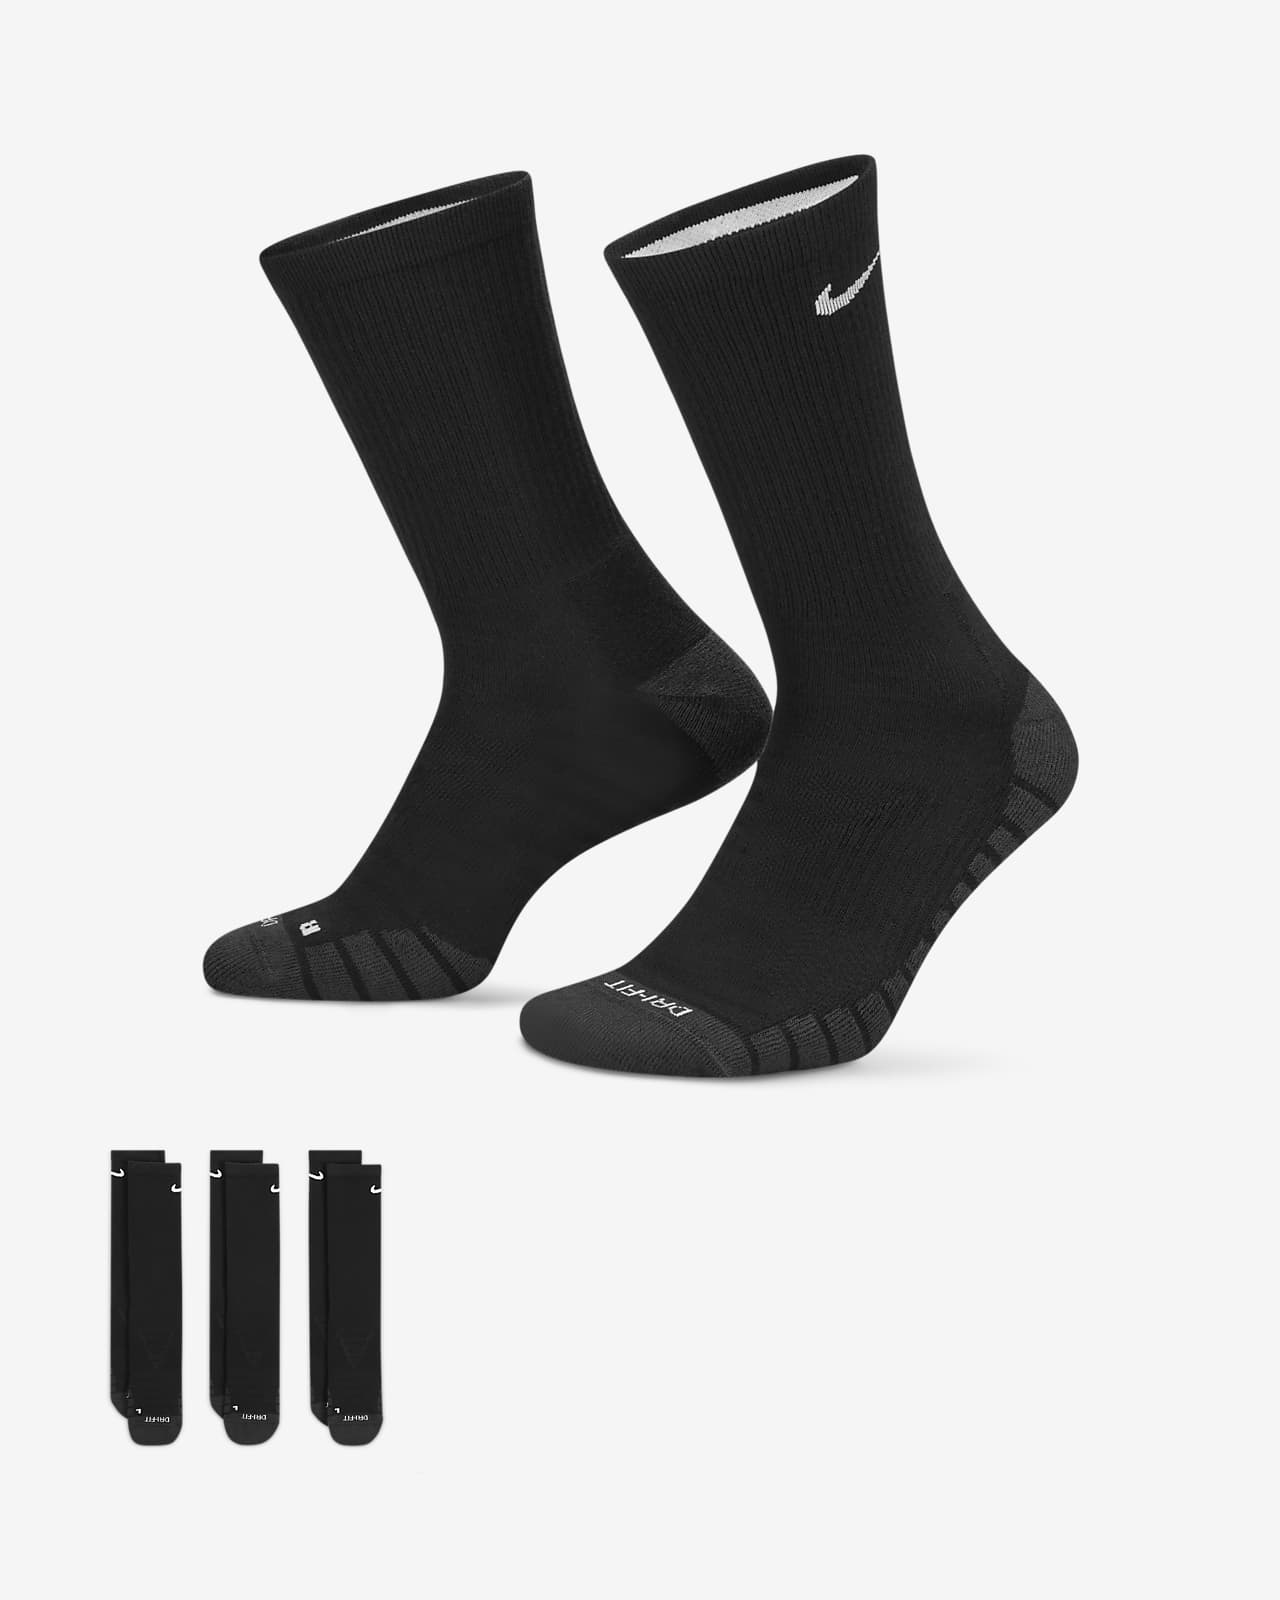 Středně vysoké polstrované tréninkové ponožky Nike Everyday Max (3 páry)